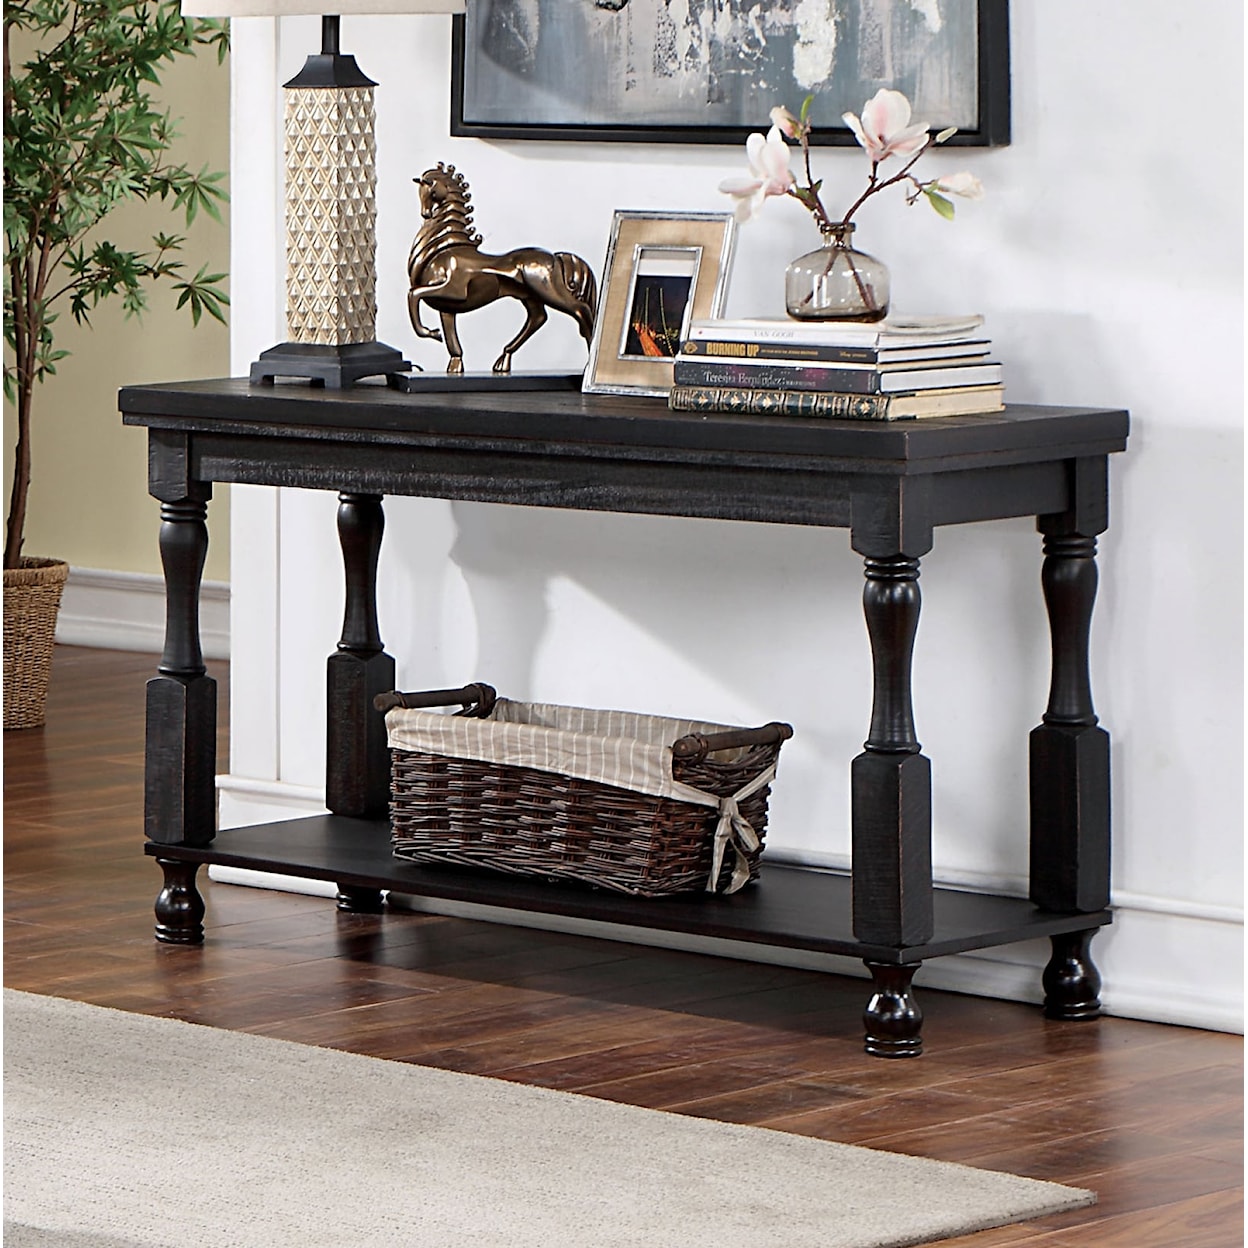 Furniture of America Calandra Sofa Table, Antique Black